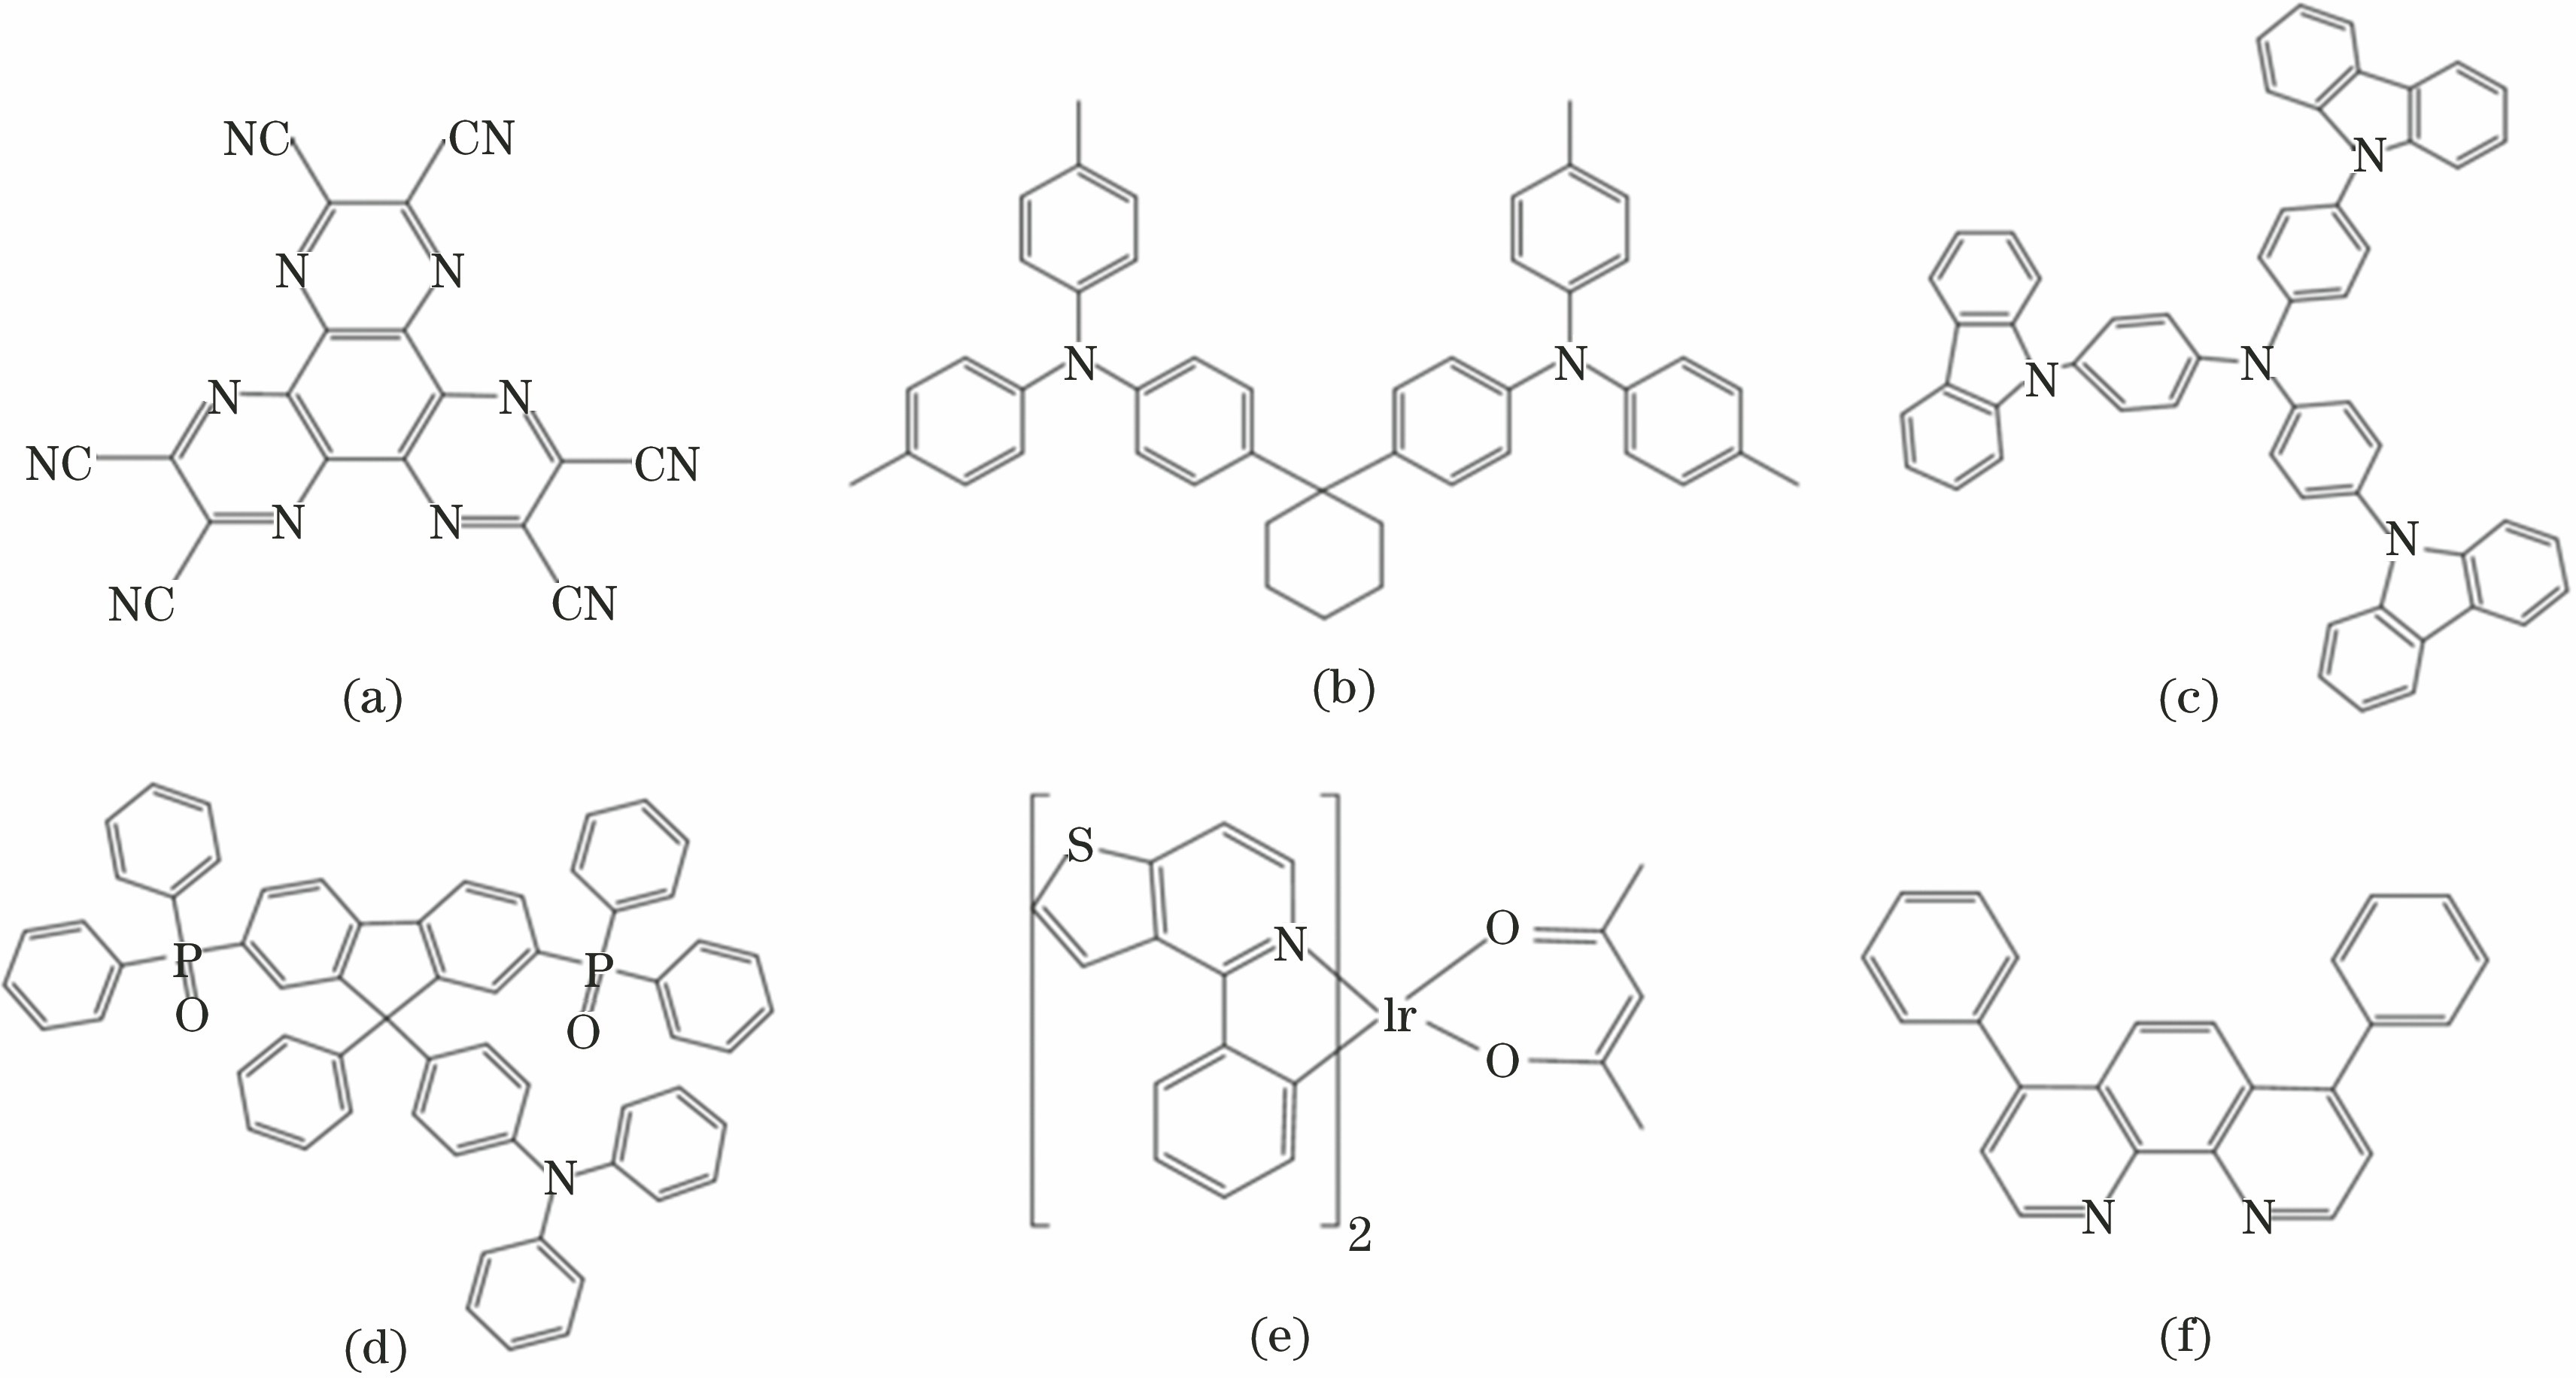 Chemical structural formula of organic materials. (a) HAT-CN; (b) TAPC; (c) TCTA; (d) POAPF; (e) PO-01; (f) Bphen